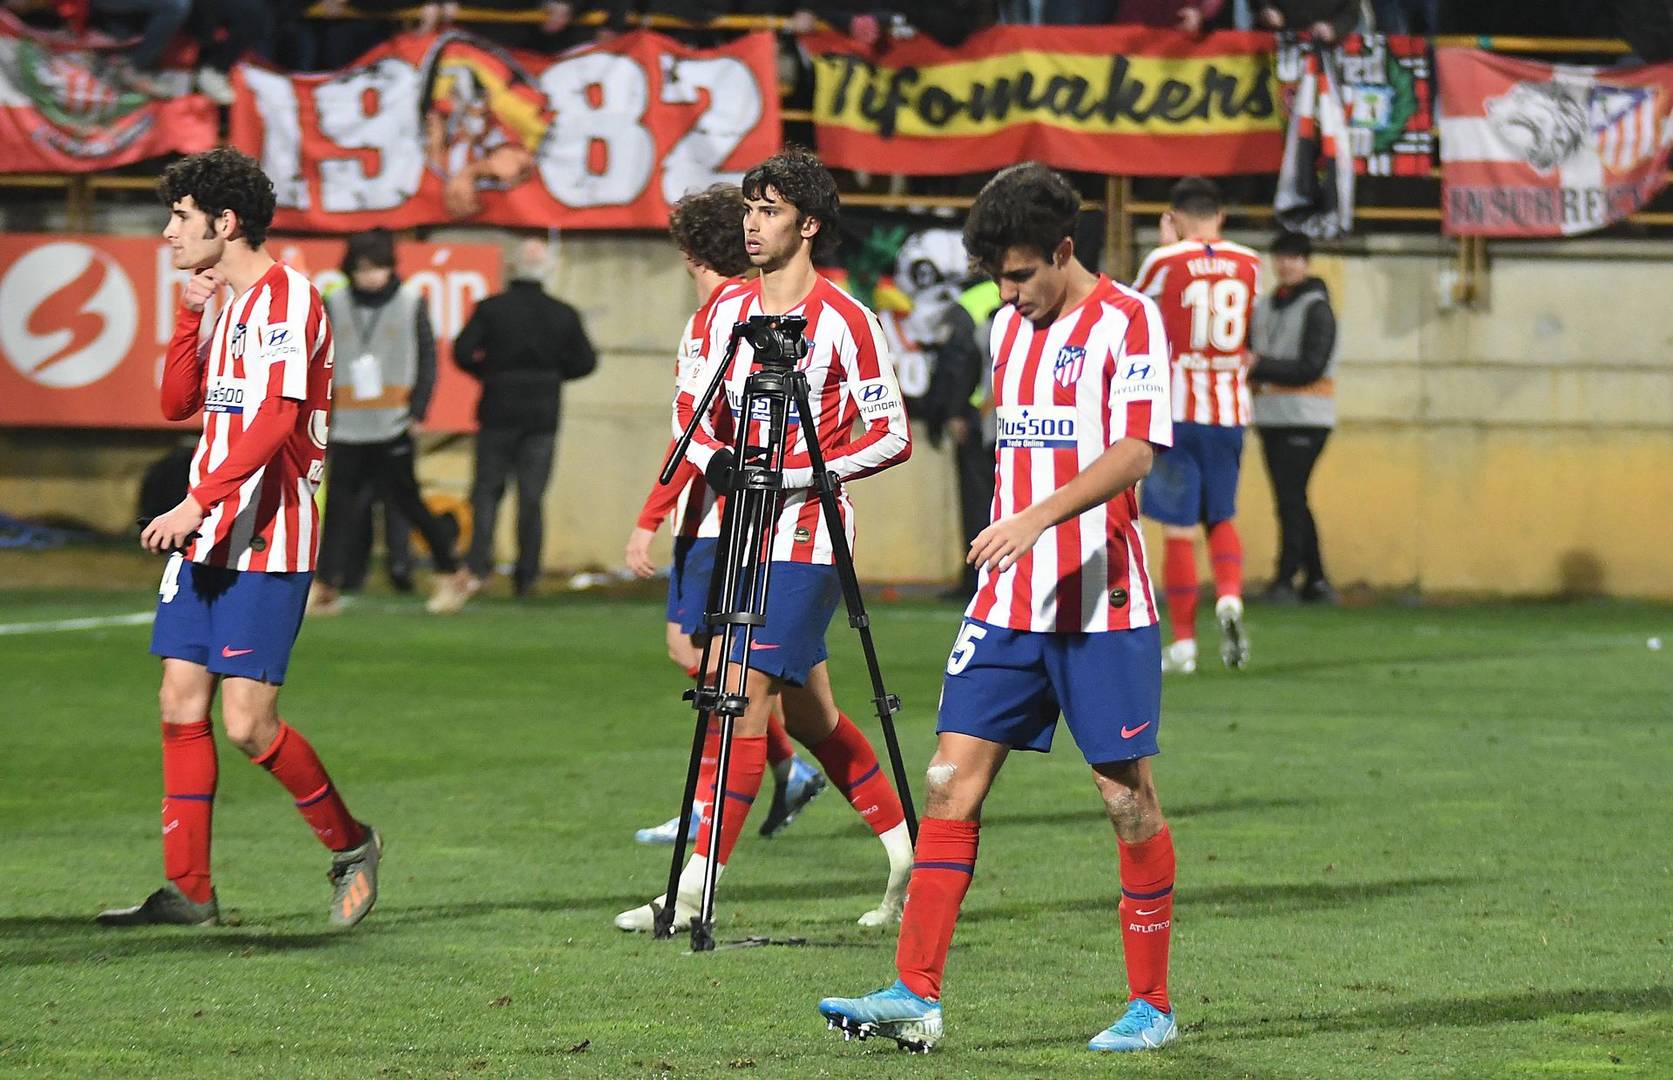 Desastre del Atlético en León y del Eibar en Badajoz en Copa